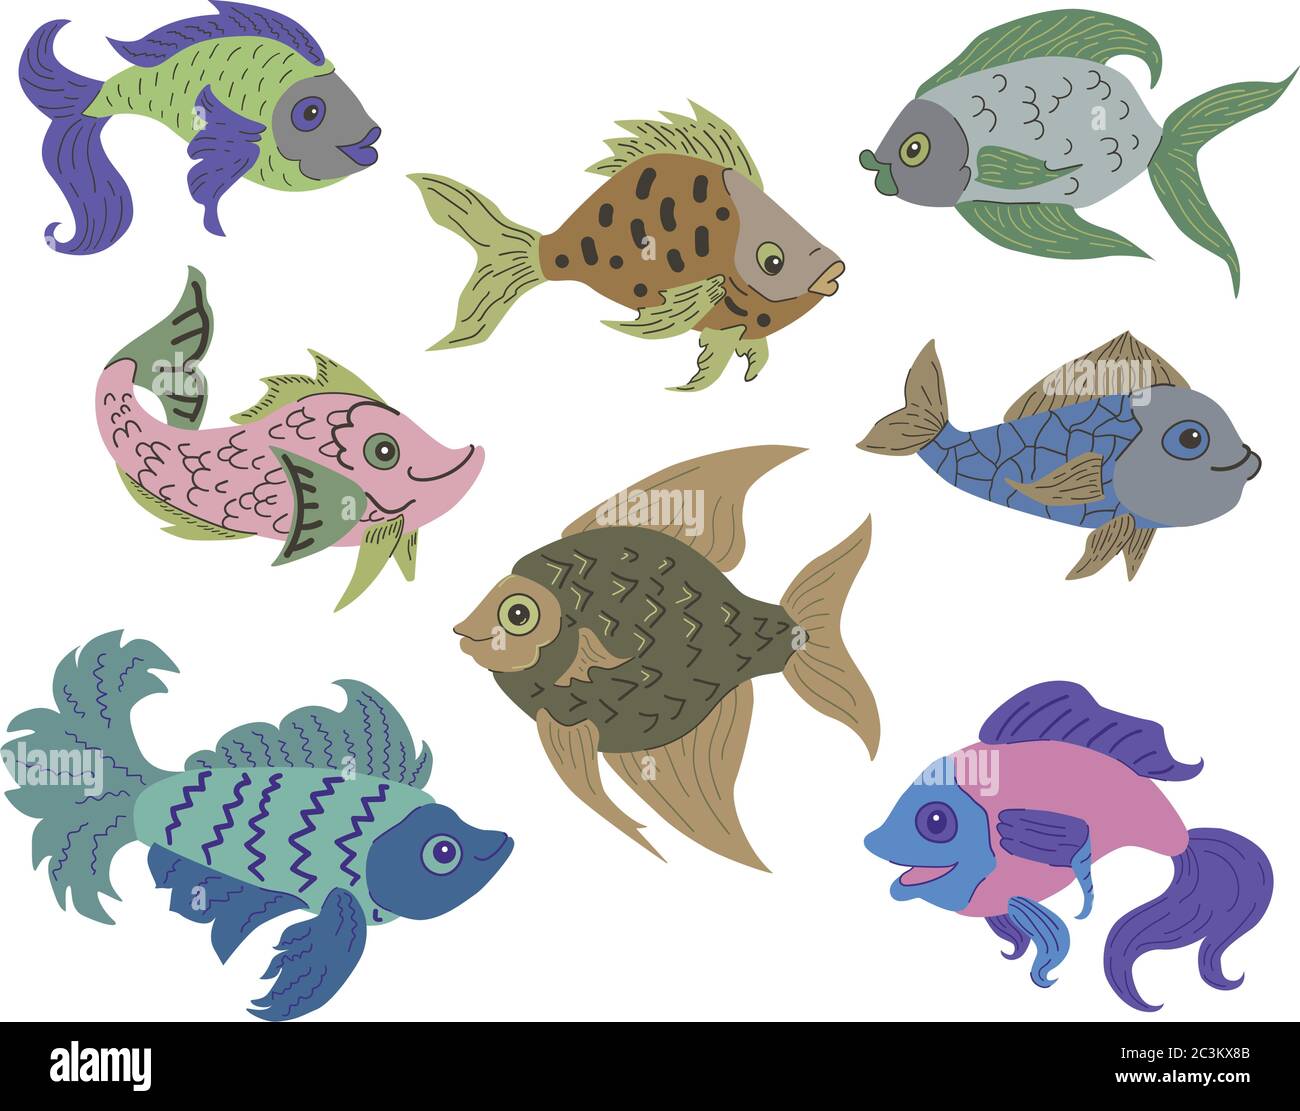 Ensemble de poissons isolés. Ensemble de poissons de dessin animé d'aquarium d'eau douce. Variétés de poissons de couleur populaire ornementaux. Motif poisson plat. Illustration vectorielle, en forme de poisson Illustration de Vecteur